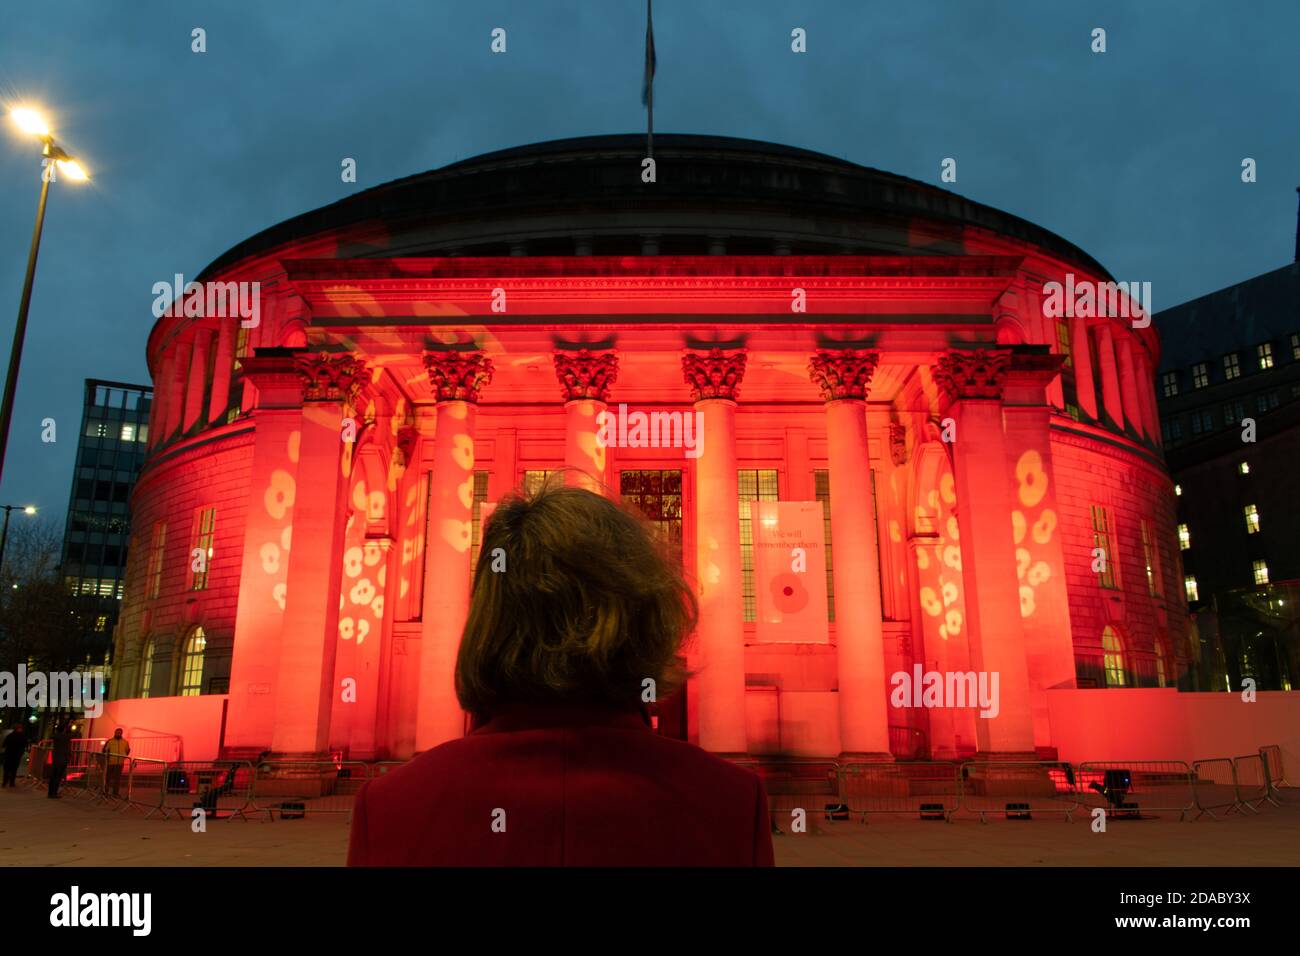 Waffenstillstandstag Gedenkfeier während der Aussperrung. Manchester Central Library, UK beleuchtet mit rotem Licht und Mohn-Design. Frau schaut auf. Öffentliches Gebäude. Stockfoto